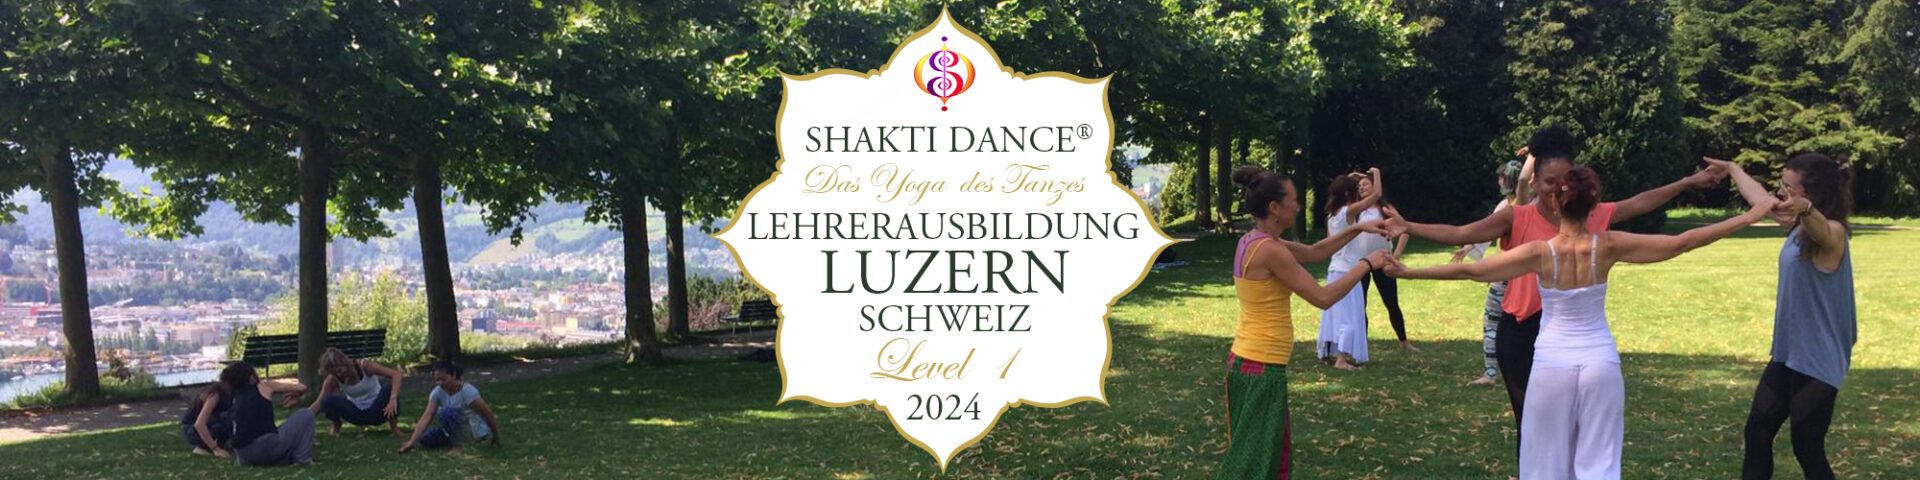 Shakti Dance Lehrerausbildung Schweiz